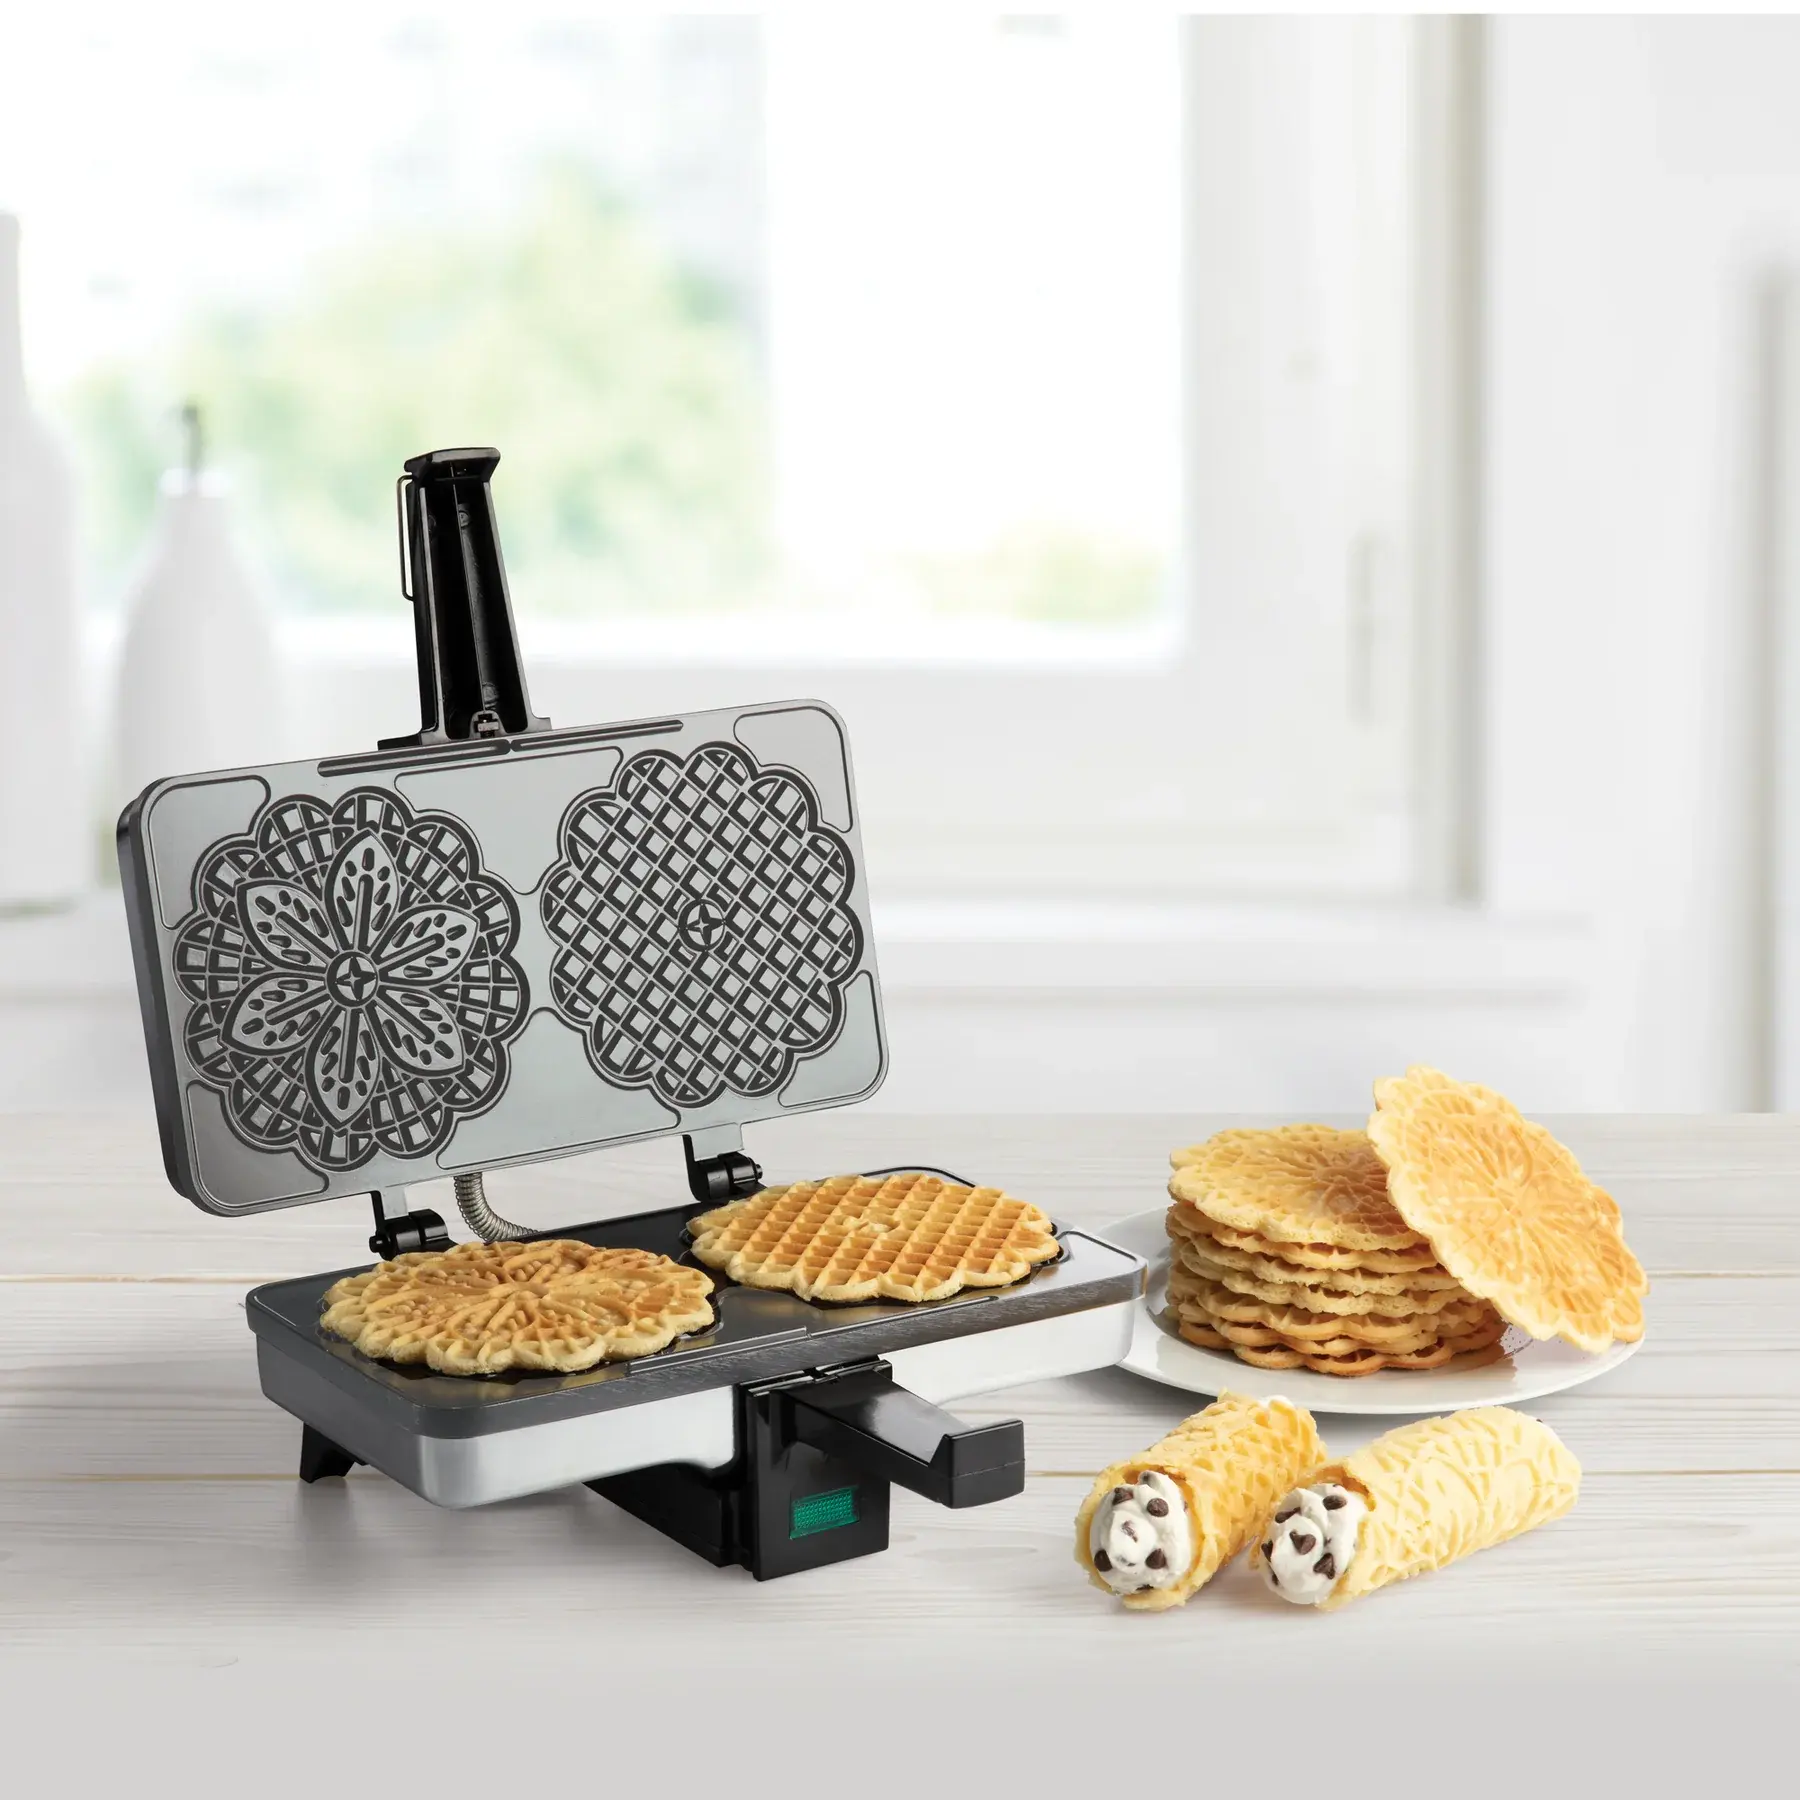  Waffle Maker by Cucina Pro - Non-Stick Waffler Iron